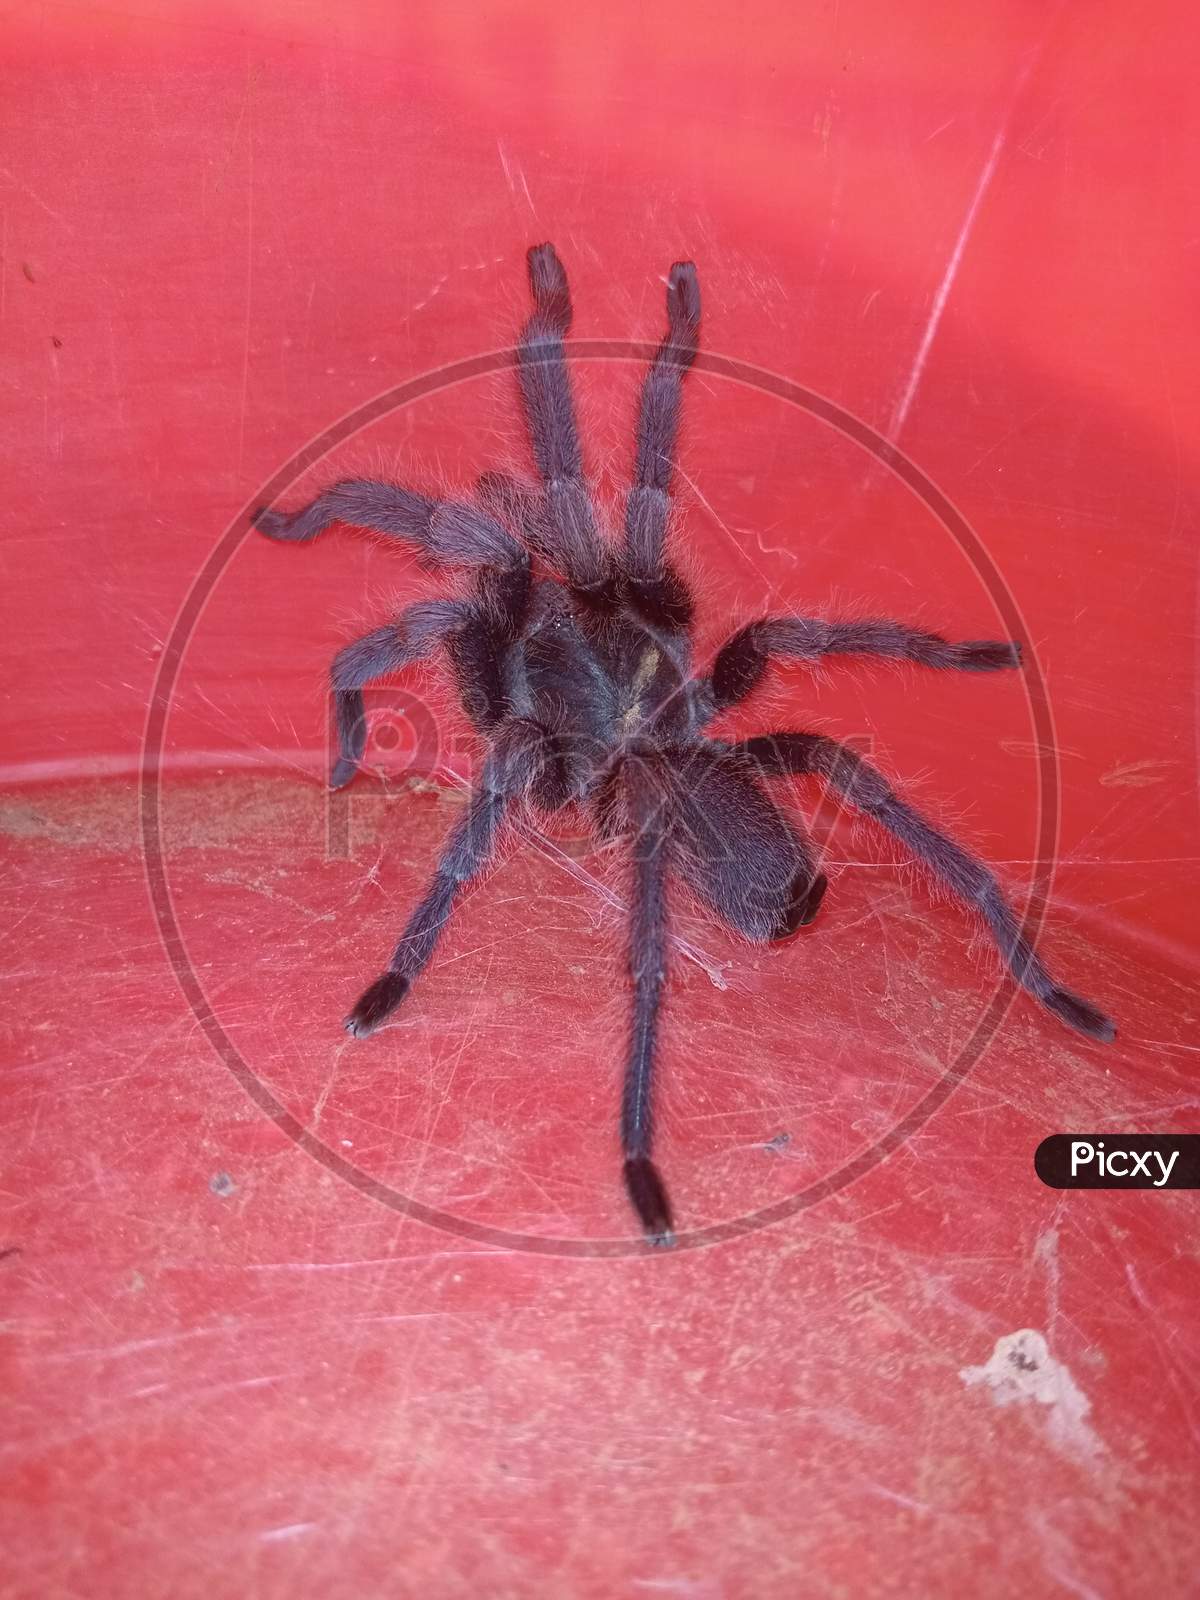 Big spider. Tarantula